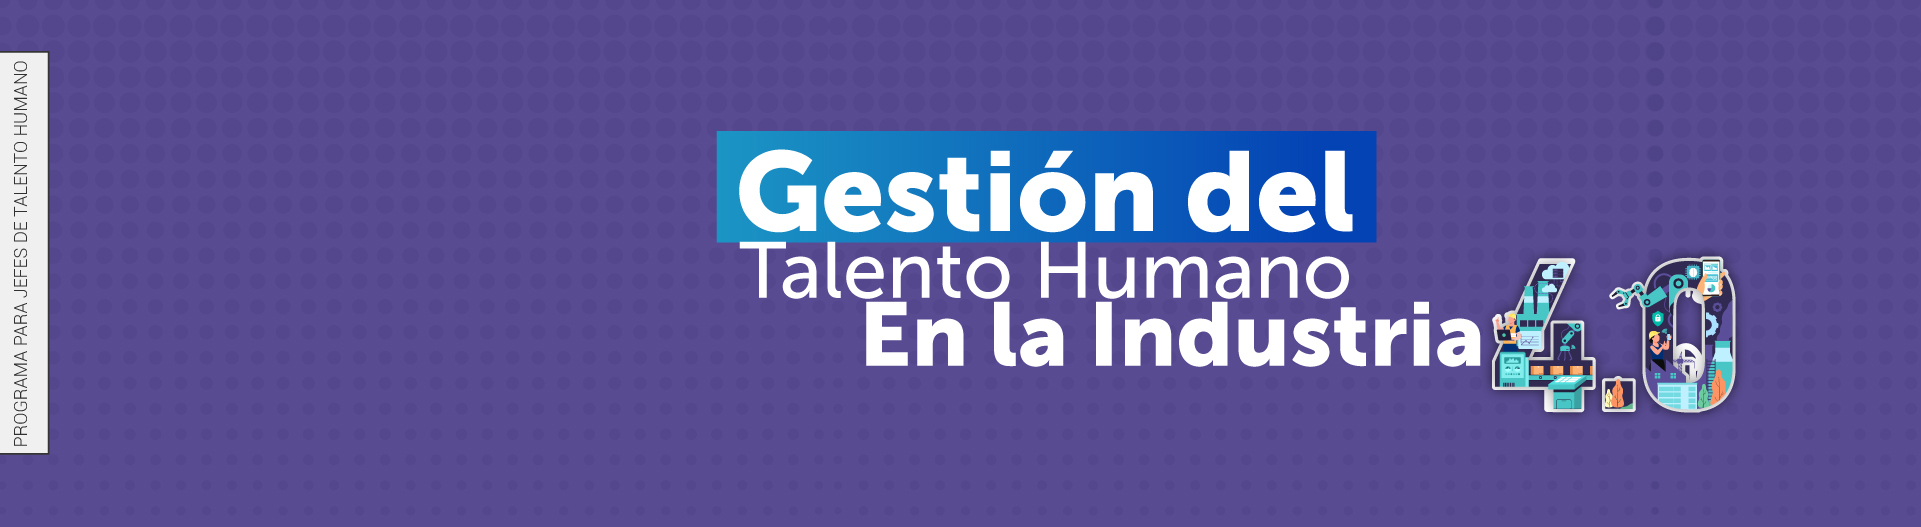 Gestión del talento humano en la industria 4.0